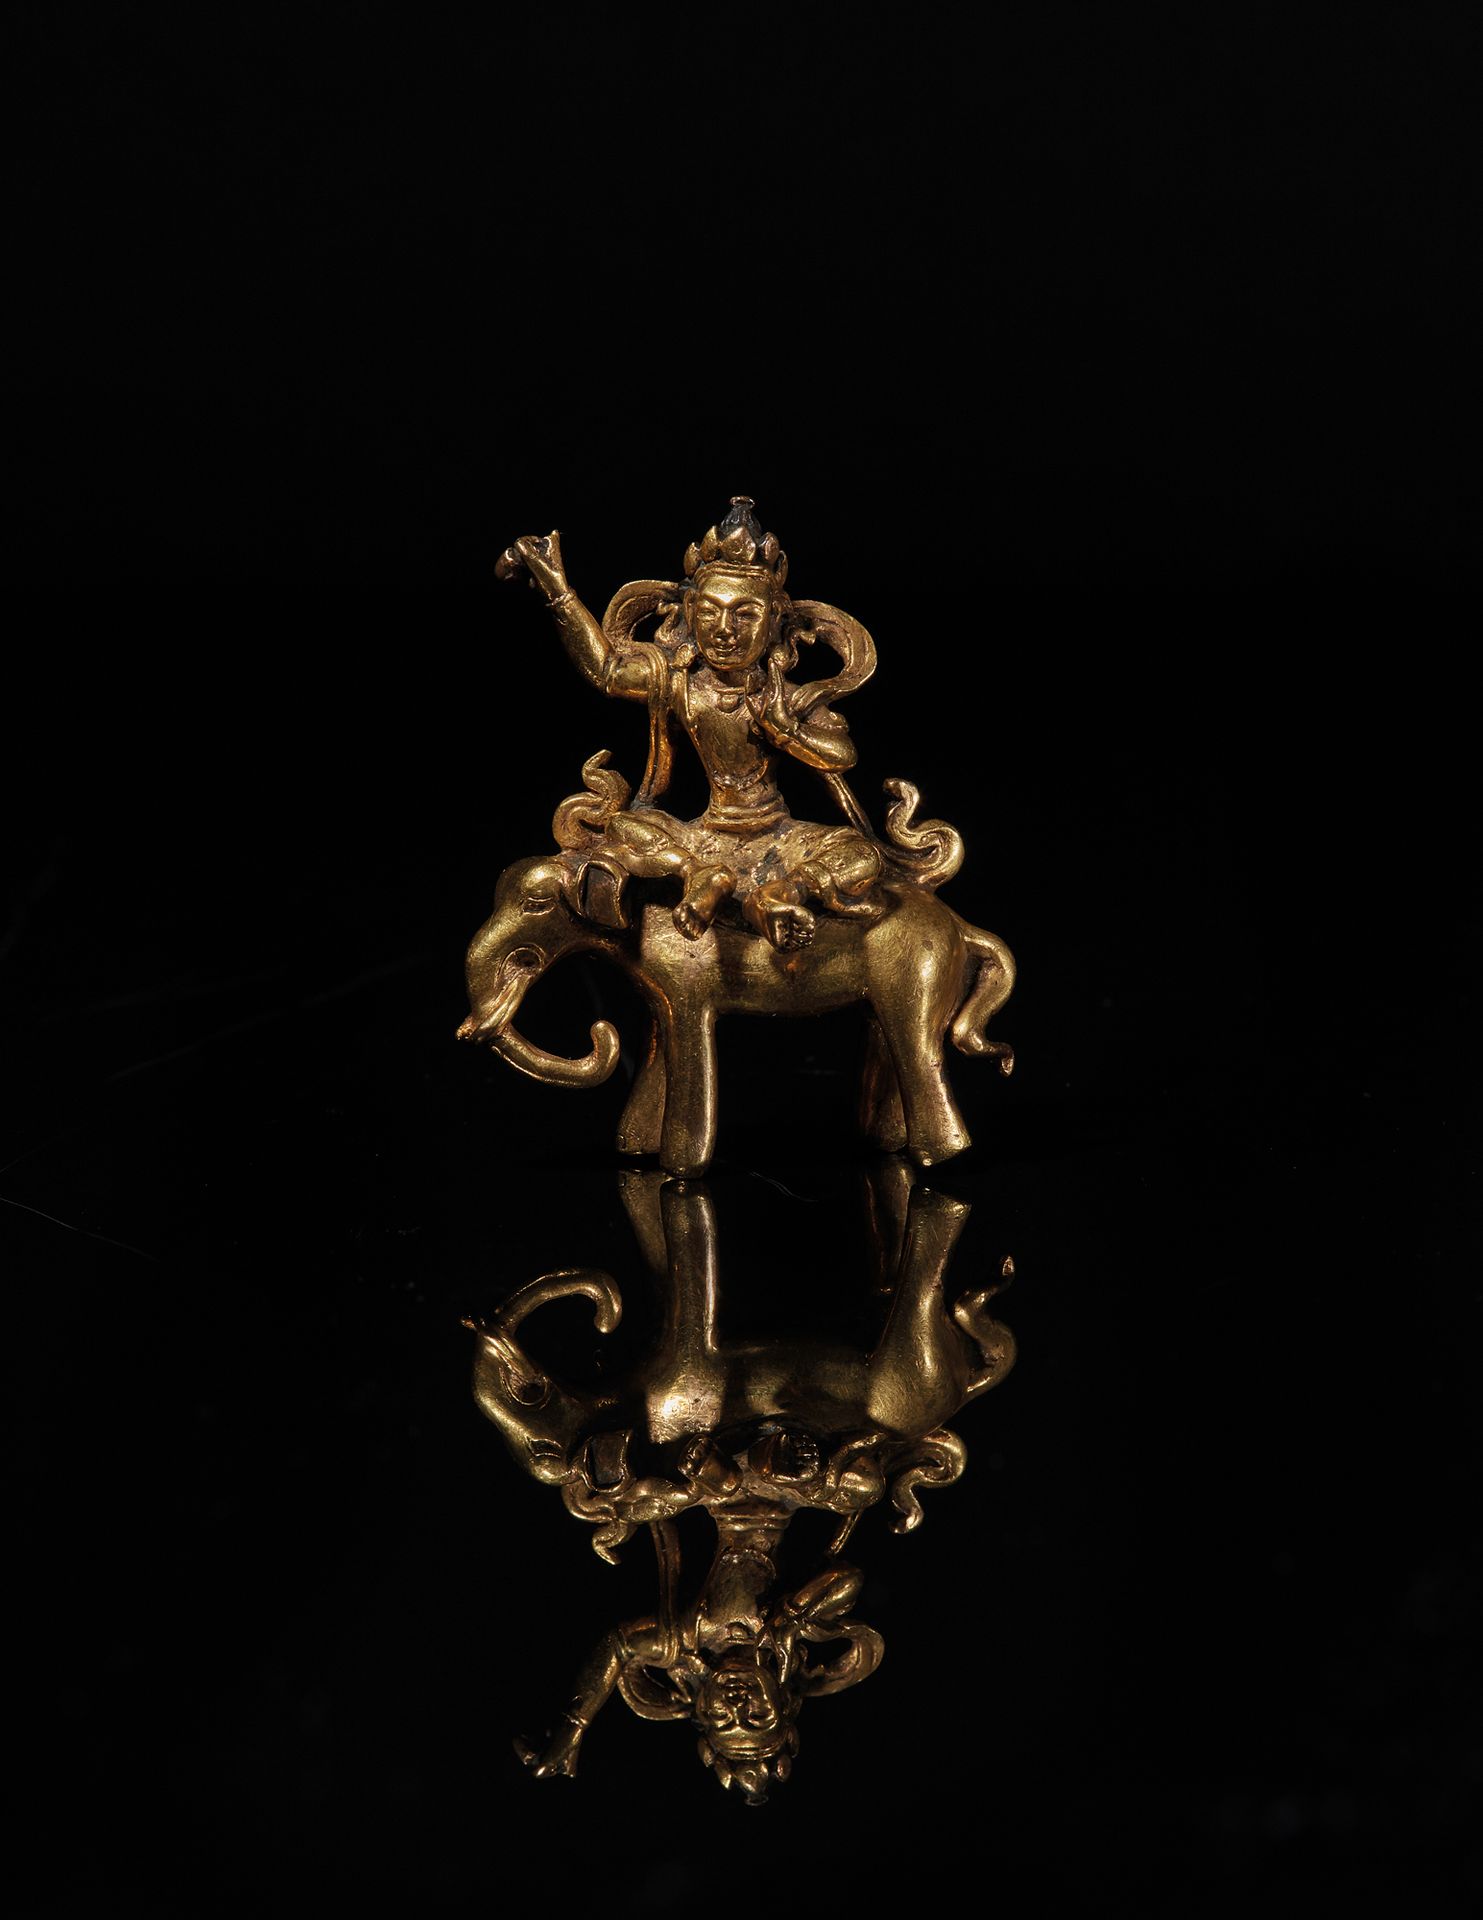 TRAVAIL SINO-TIBETAIN - XVIIIe siècle 萨塔克拉图的鎏金铜像坐在大象背上，右臂抬起，手持金刚杵，左手持维塔卡法。(小缺）
H&hellip;